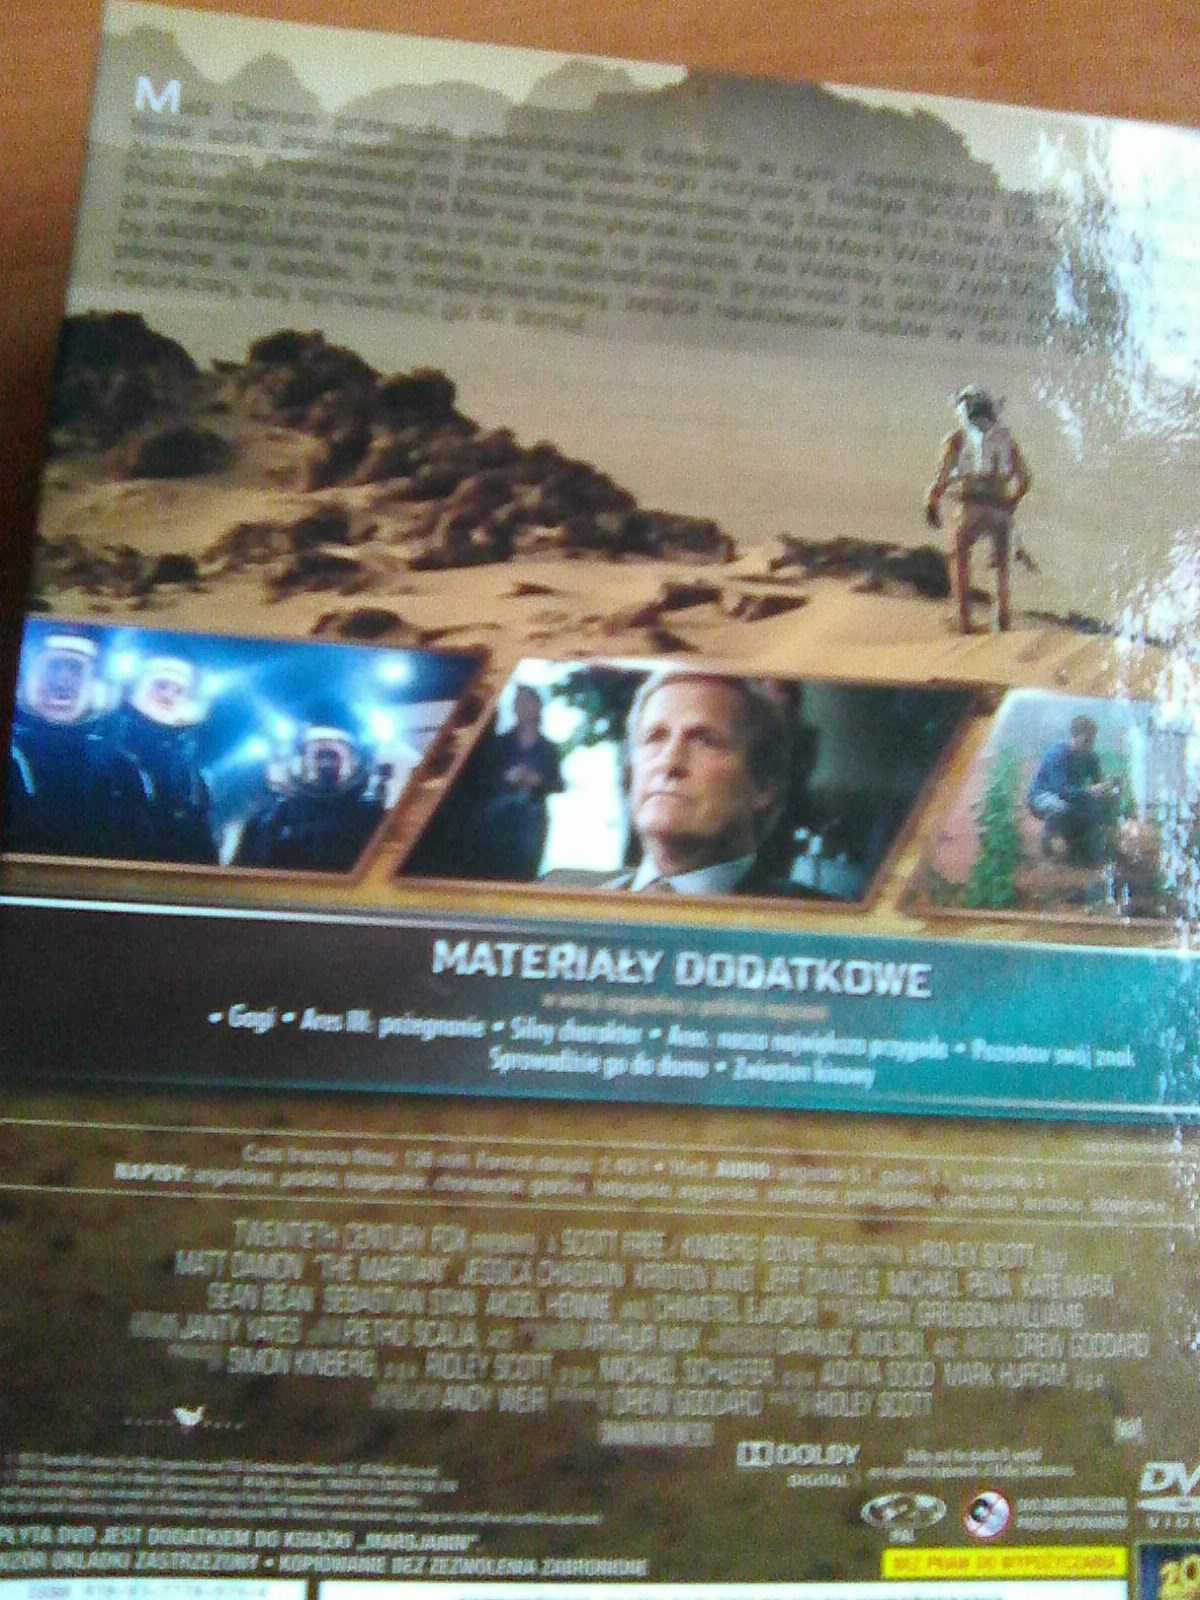 The Martian Marsjanin [DVD] / + książeczka /